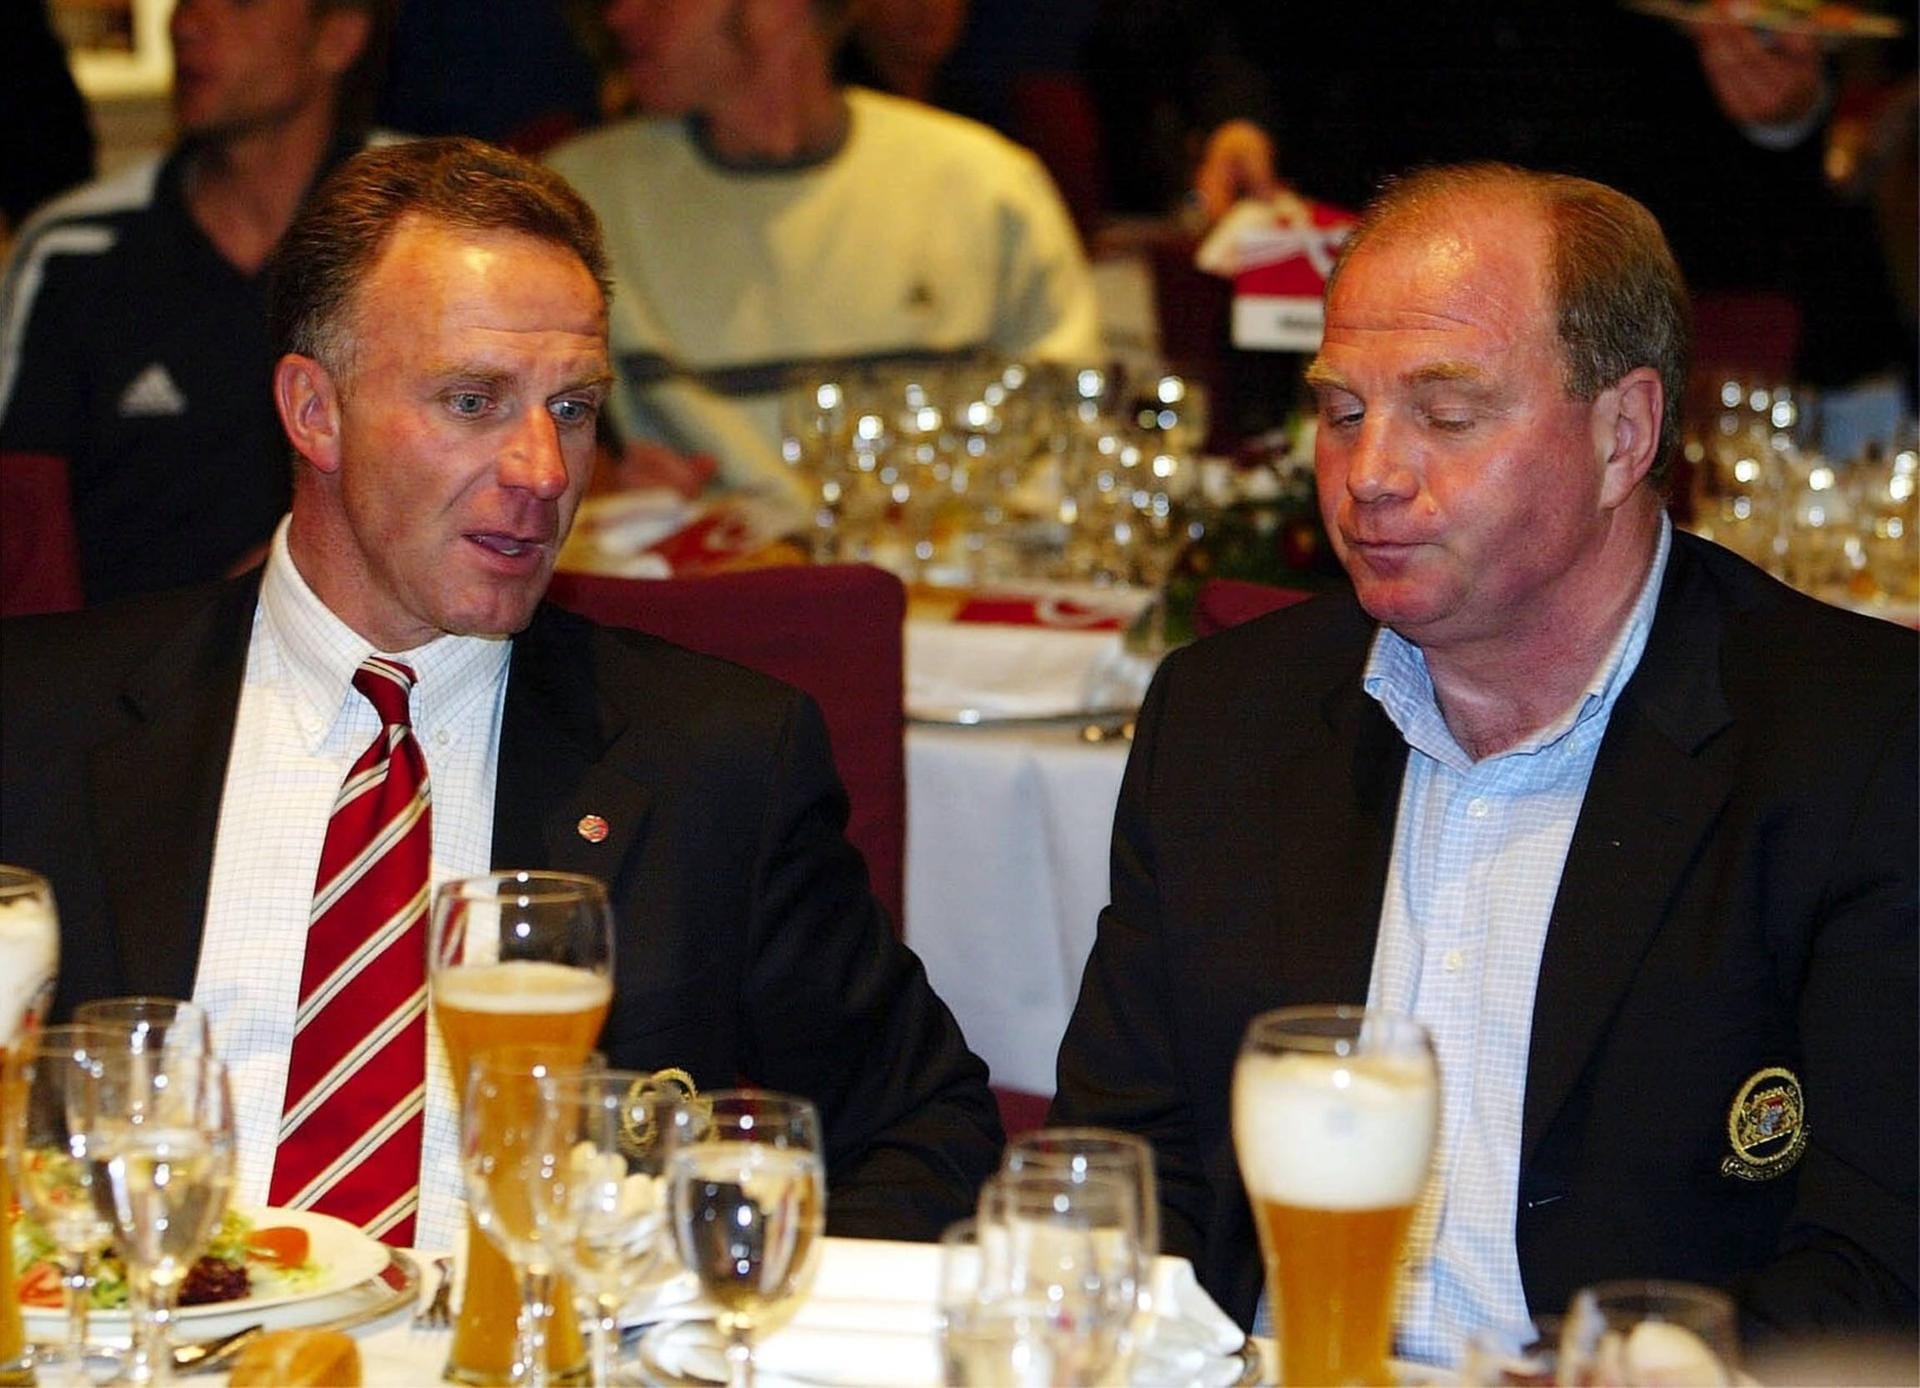 Am 14. Februar 2002 wurde Rummenigge nach der Umwandlung der Fußballabteilung des FC Bayern München in eine AG zum Vorstandsvorsitzenden des Klubs ernannt. In den folgenden fast zwei Jahrzehnten unter seiner Führung sollte der FC Bayern eine der erfolgreichsten Perioden seit seinem Bestehen erleben.